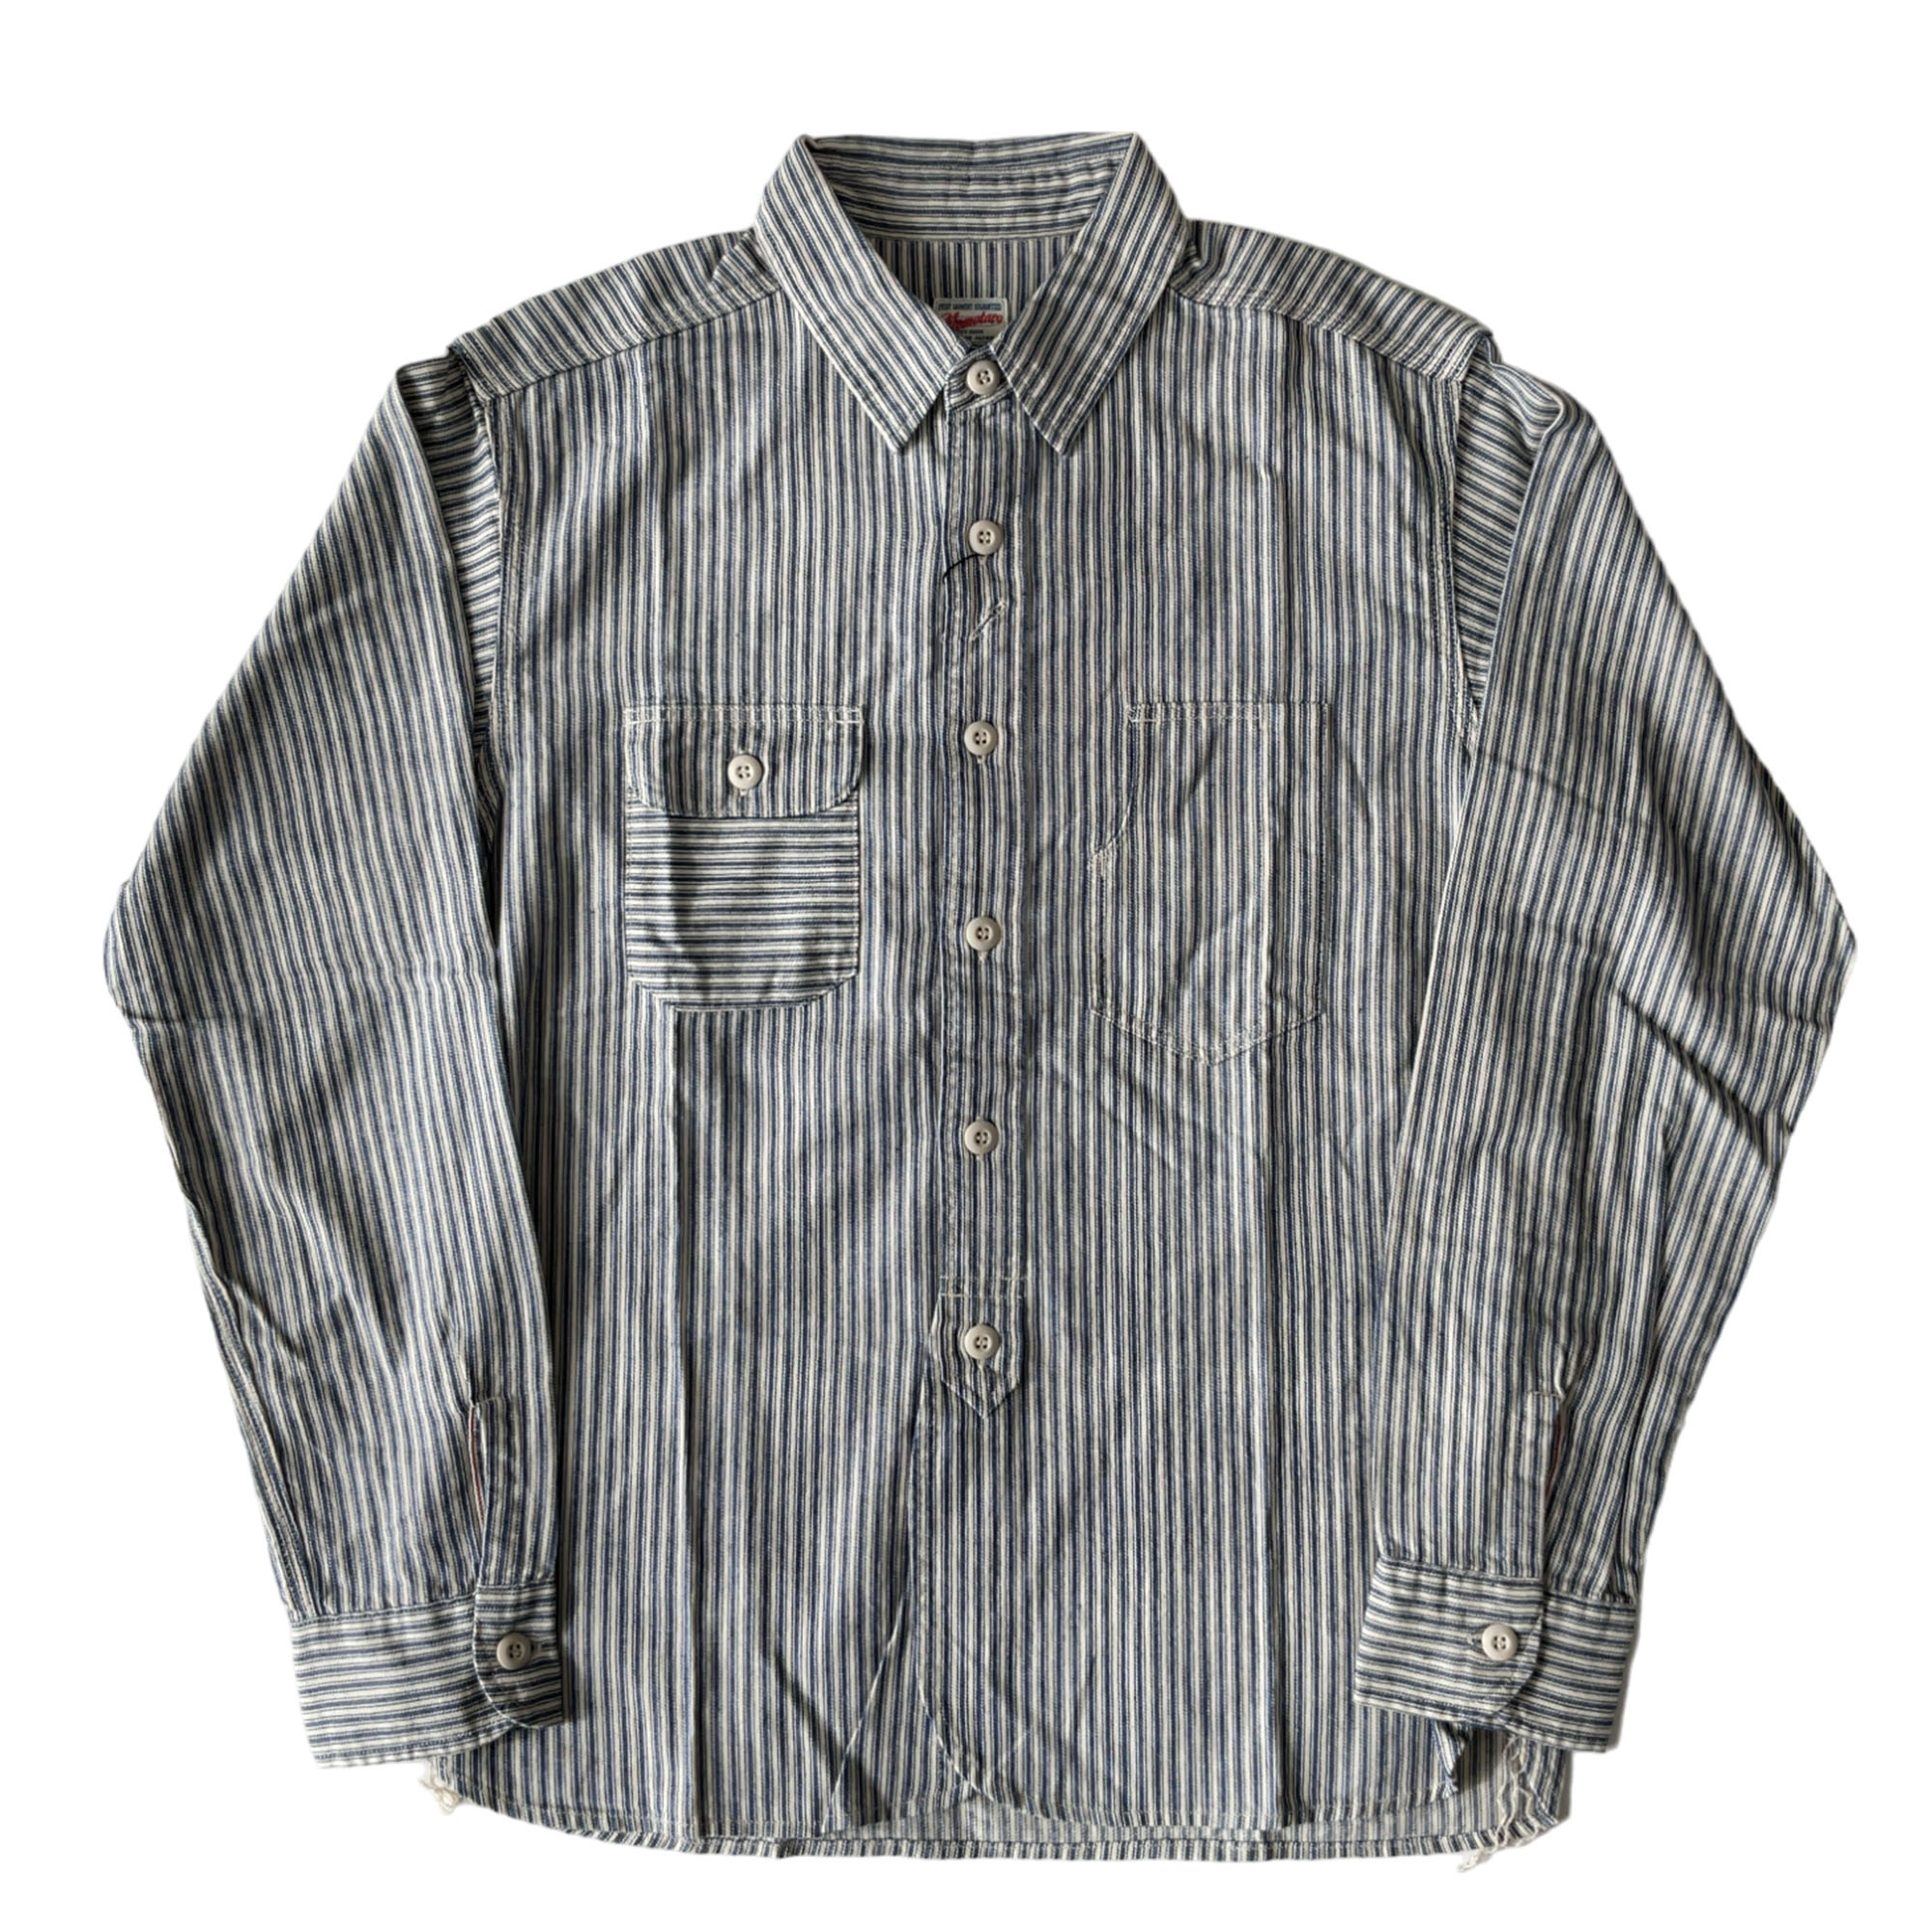 桃太郎ジーンズ 05-297 インディゴ ストライプ セルビッチ ワークシャツ